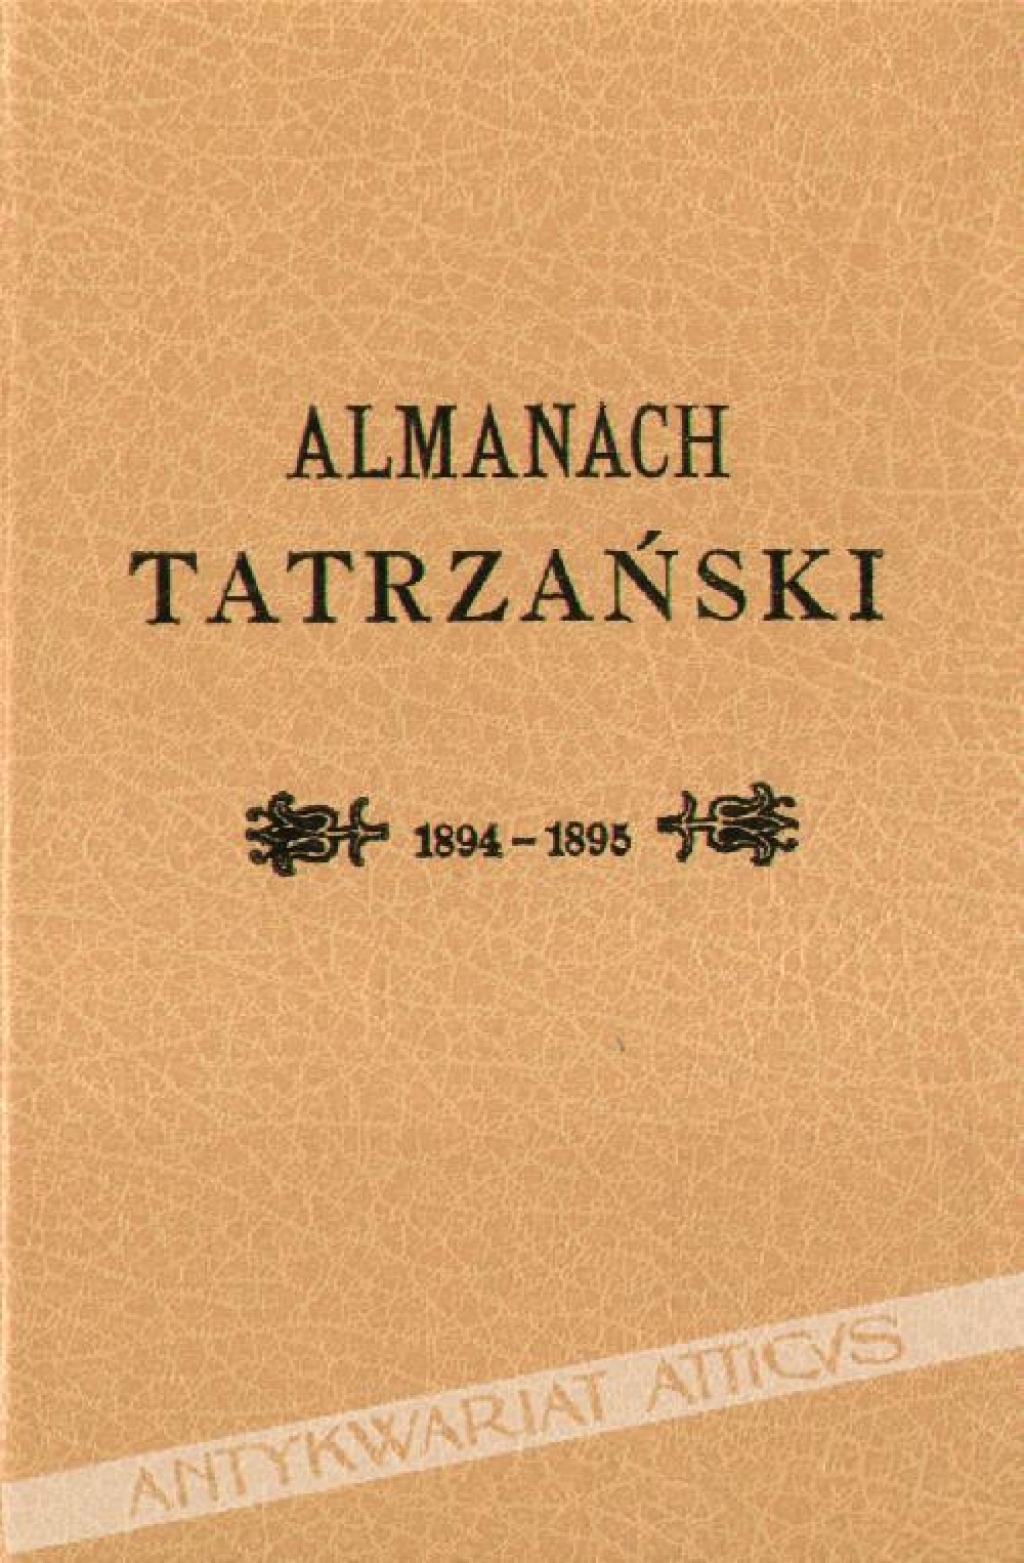 Almanach Tatrzański. Rocznik Tatrzaństwa 1894-1895 ilustrowany [reprint]